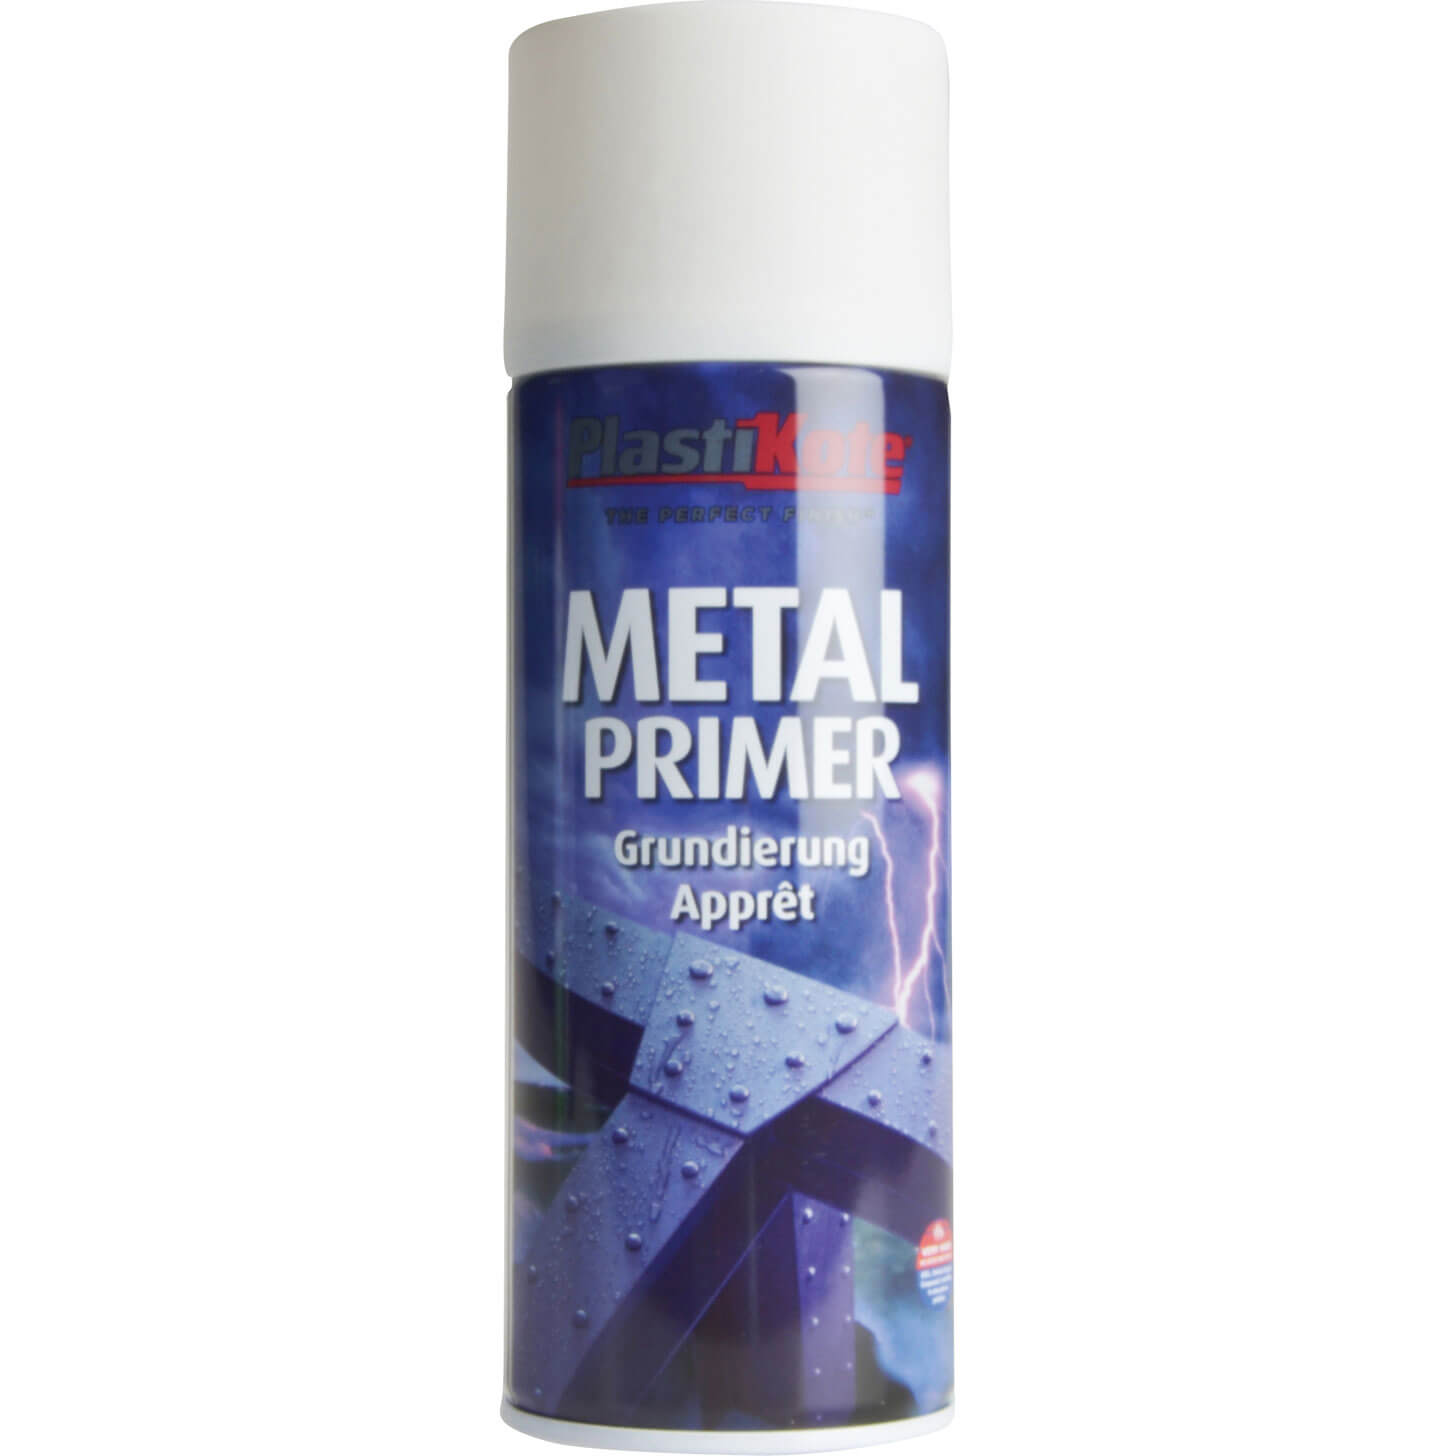 Image of Plastikote Metal Primer Aerosol Spray Paint White 400ml